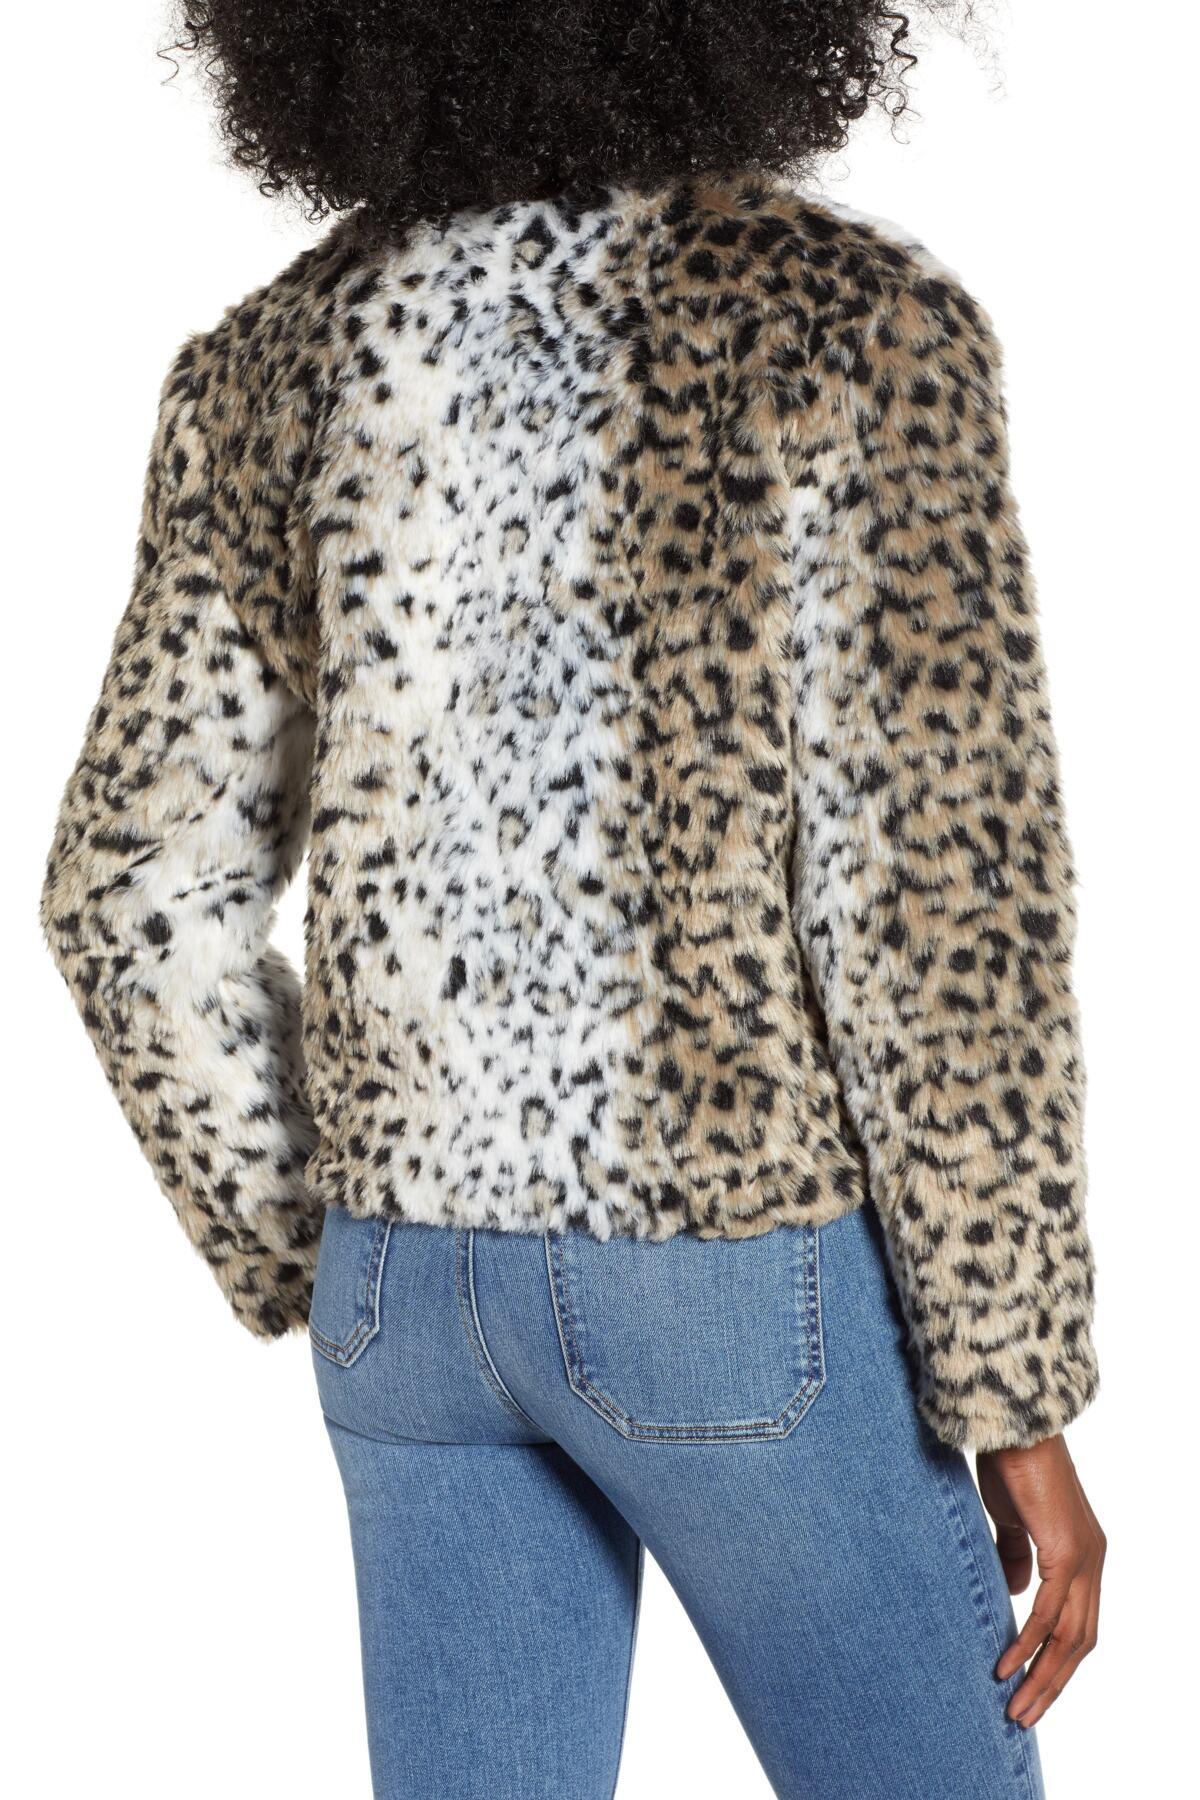 BB Dakota Wild Thing Snow Leopard Print Faux Fur Jacket in Black - Lyst